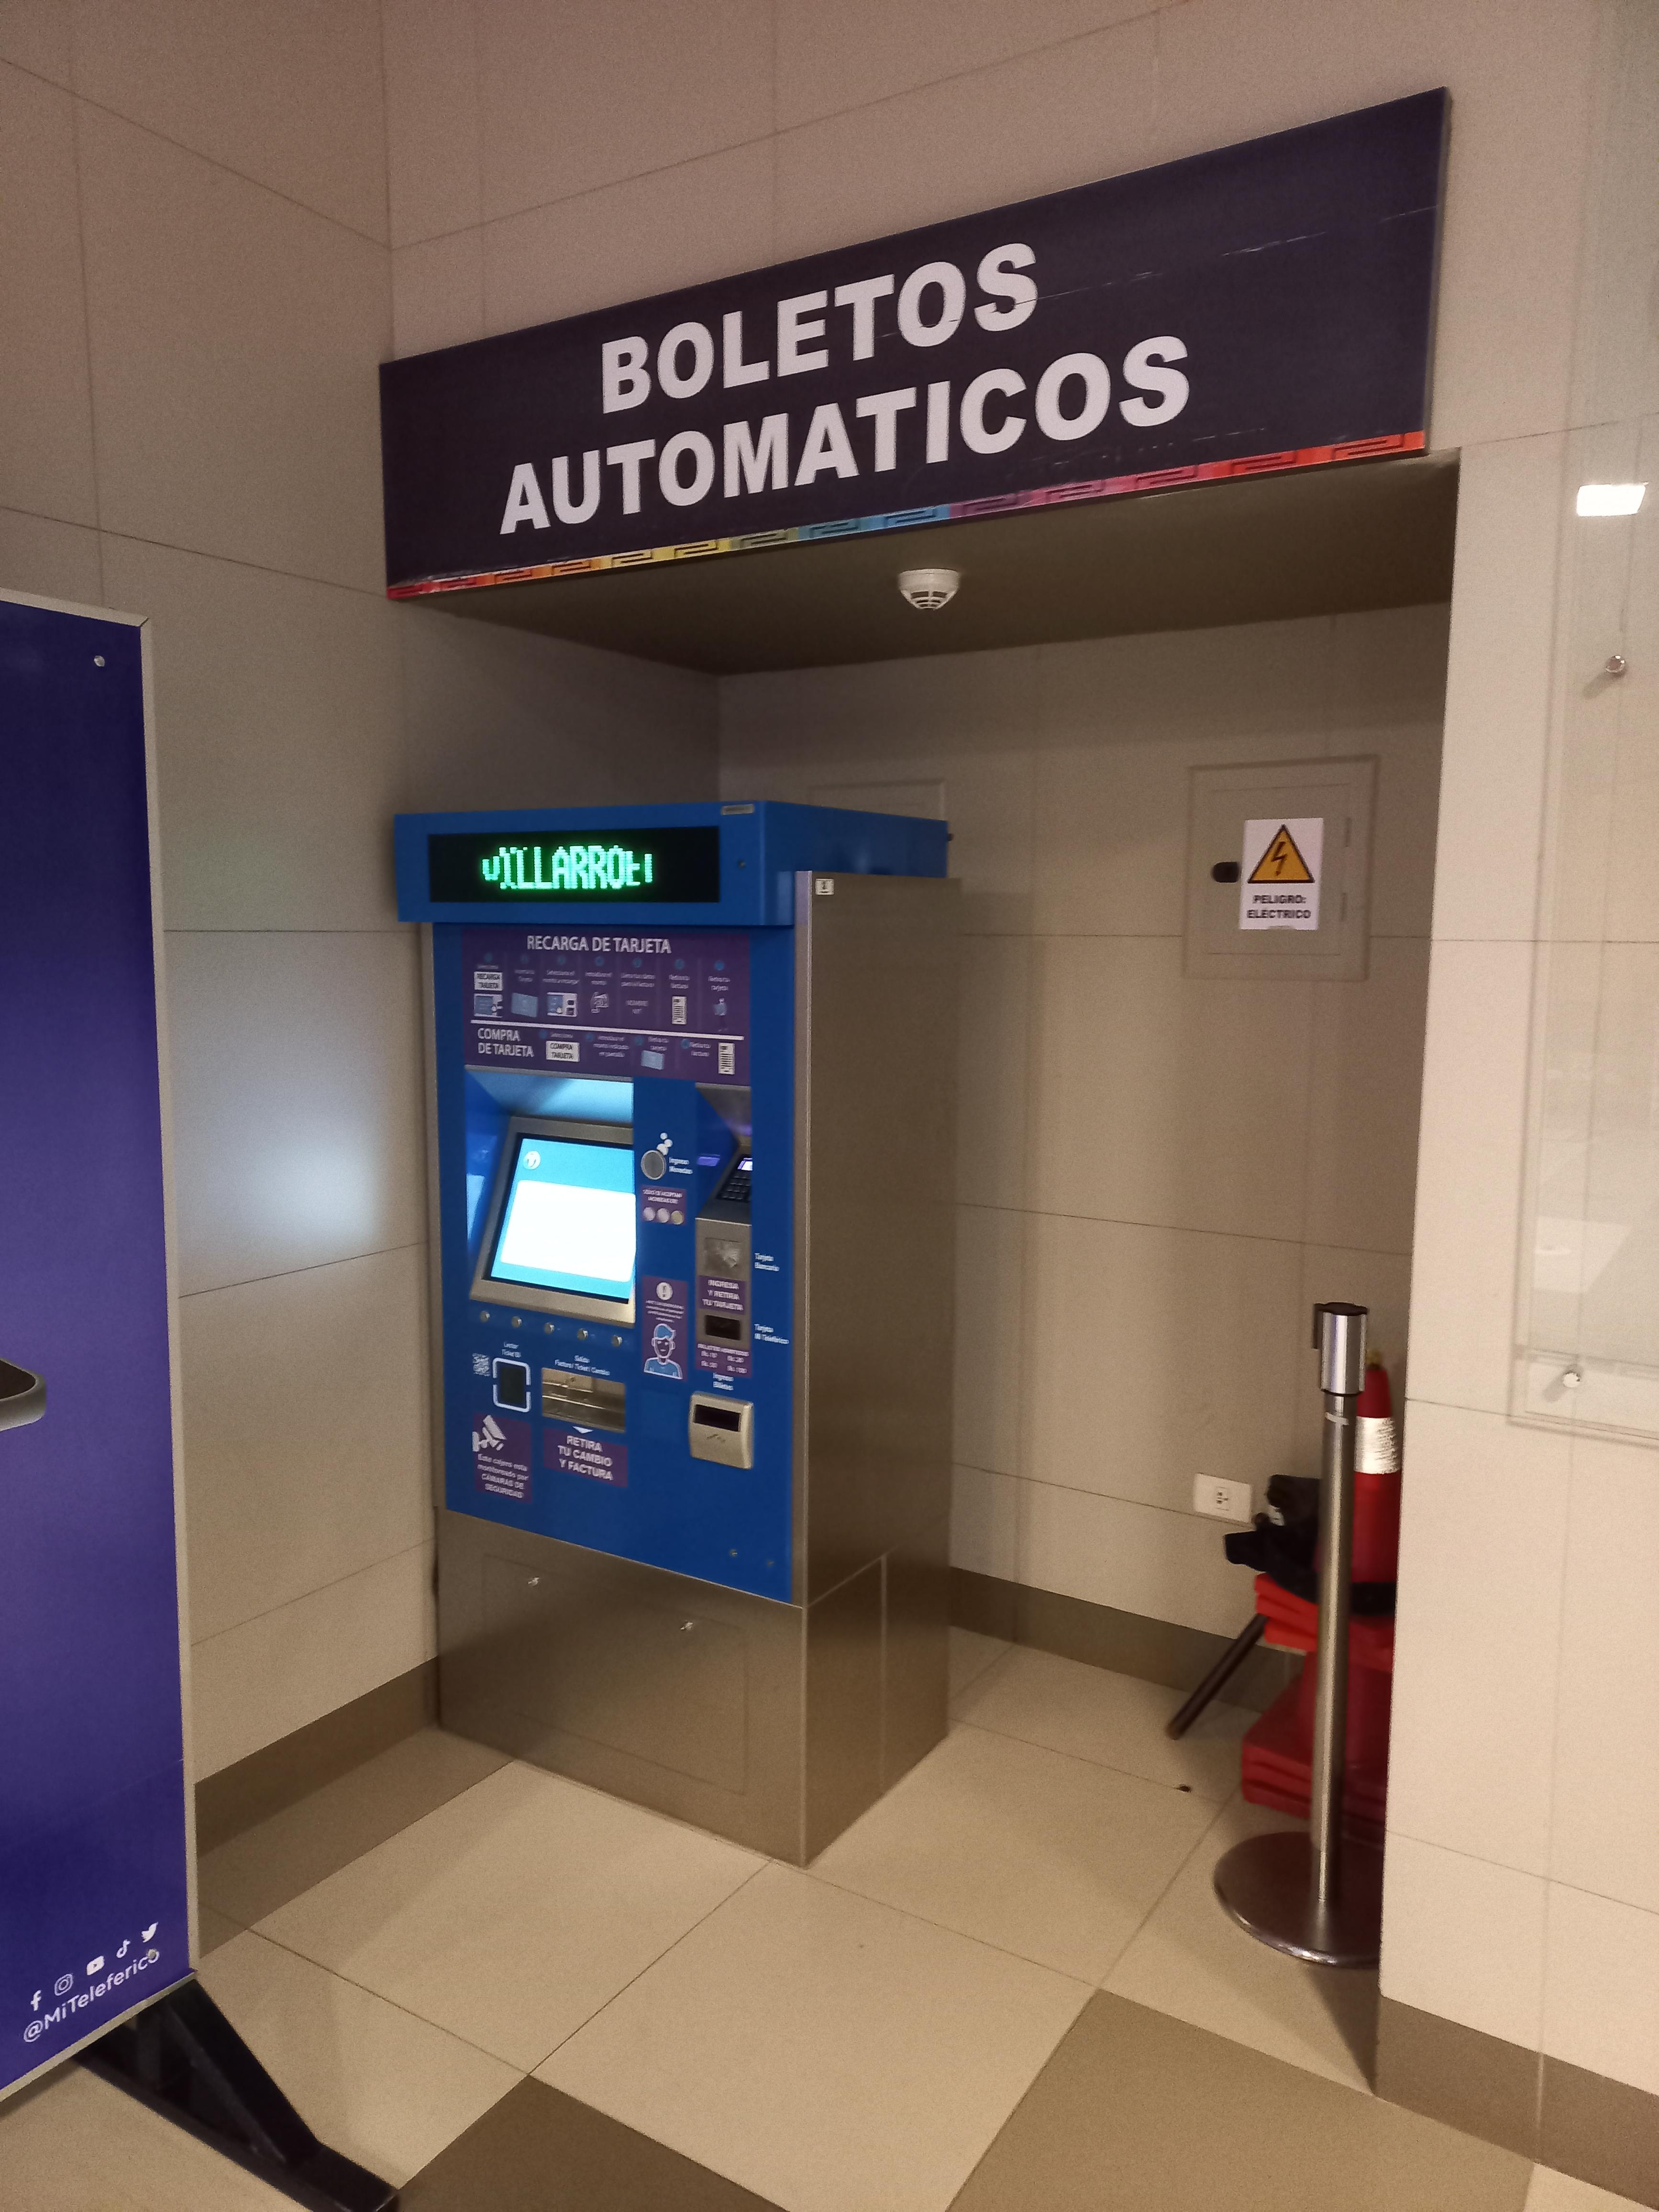 라파스 케이블카 카드 자판기